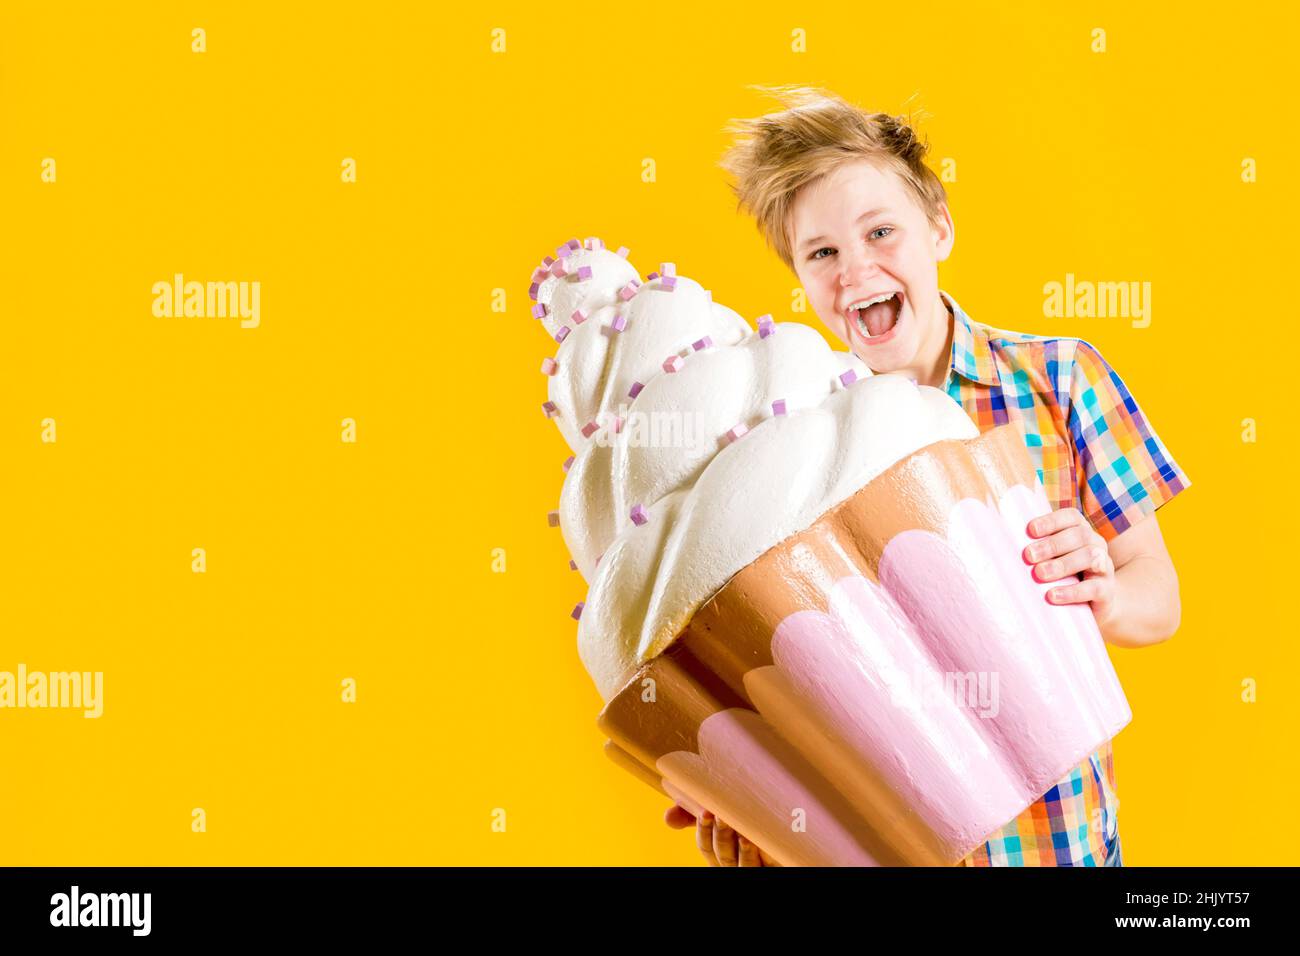 Un chico lindo sosteniendo un enorme cupcake en sus manos, tratando de morderlo sobre un fondo amarillo. Adolescente alegre con un corte de pelo descuidado. Confitería. D Foto de stock